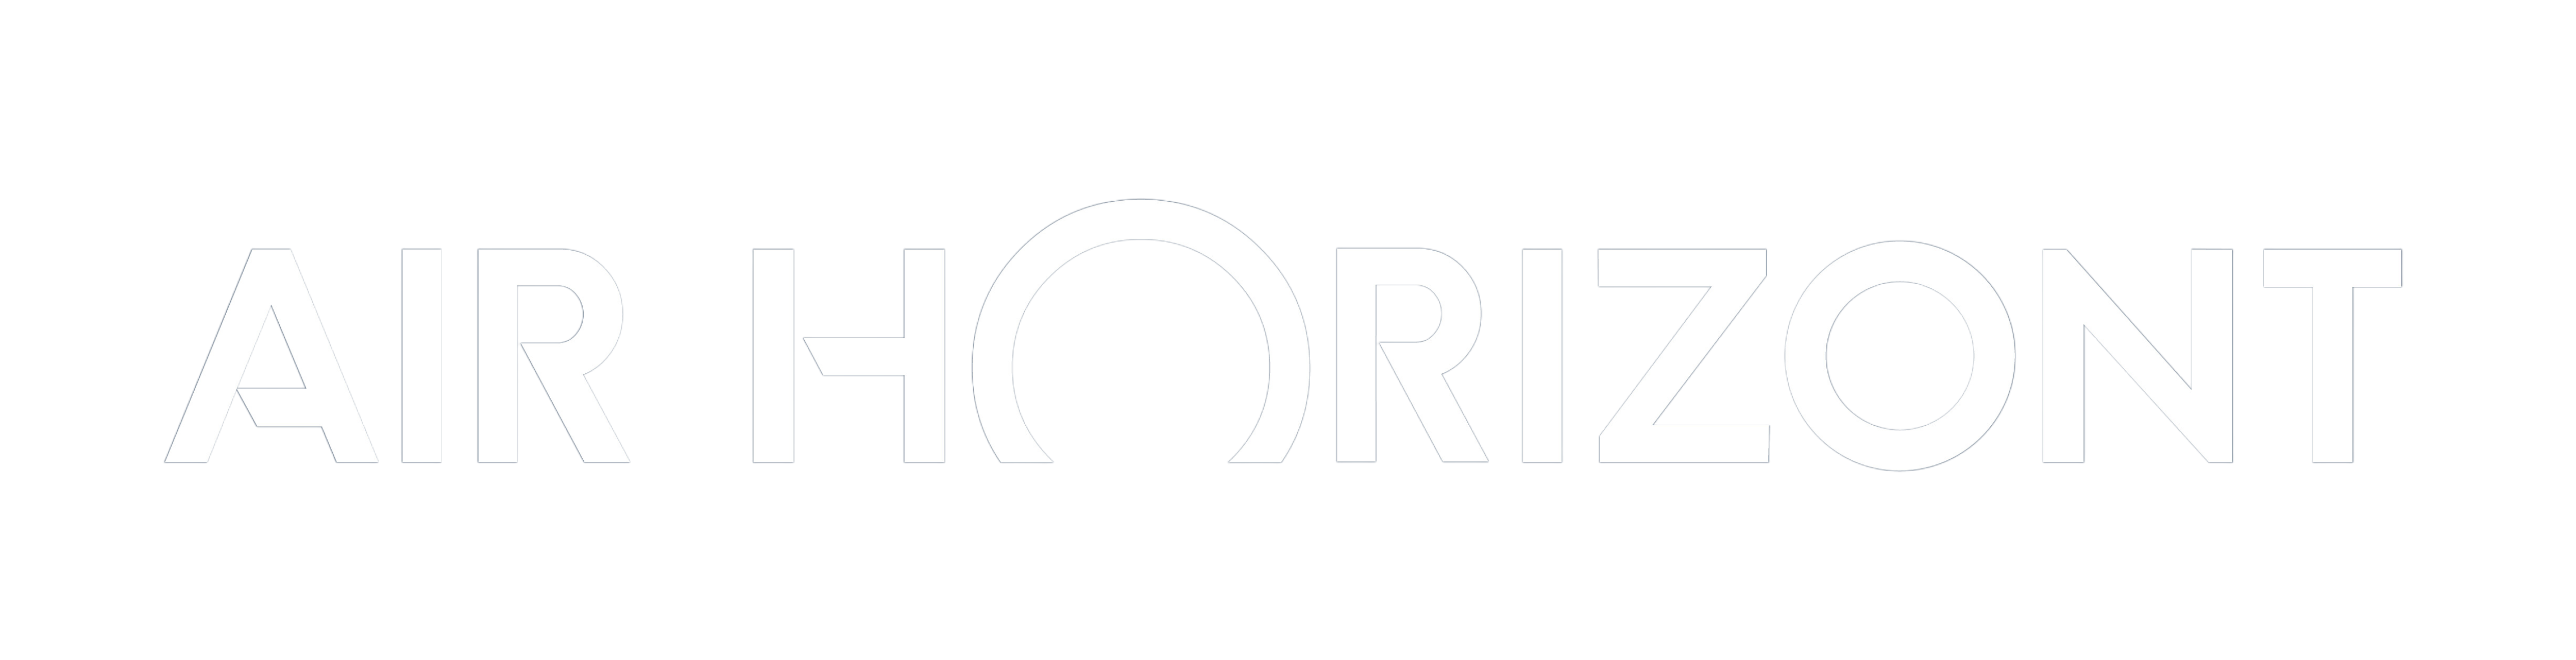 Air Horizont negative logo